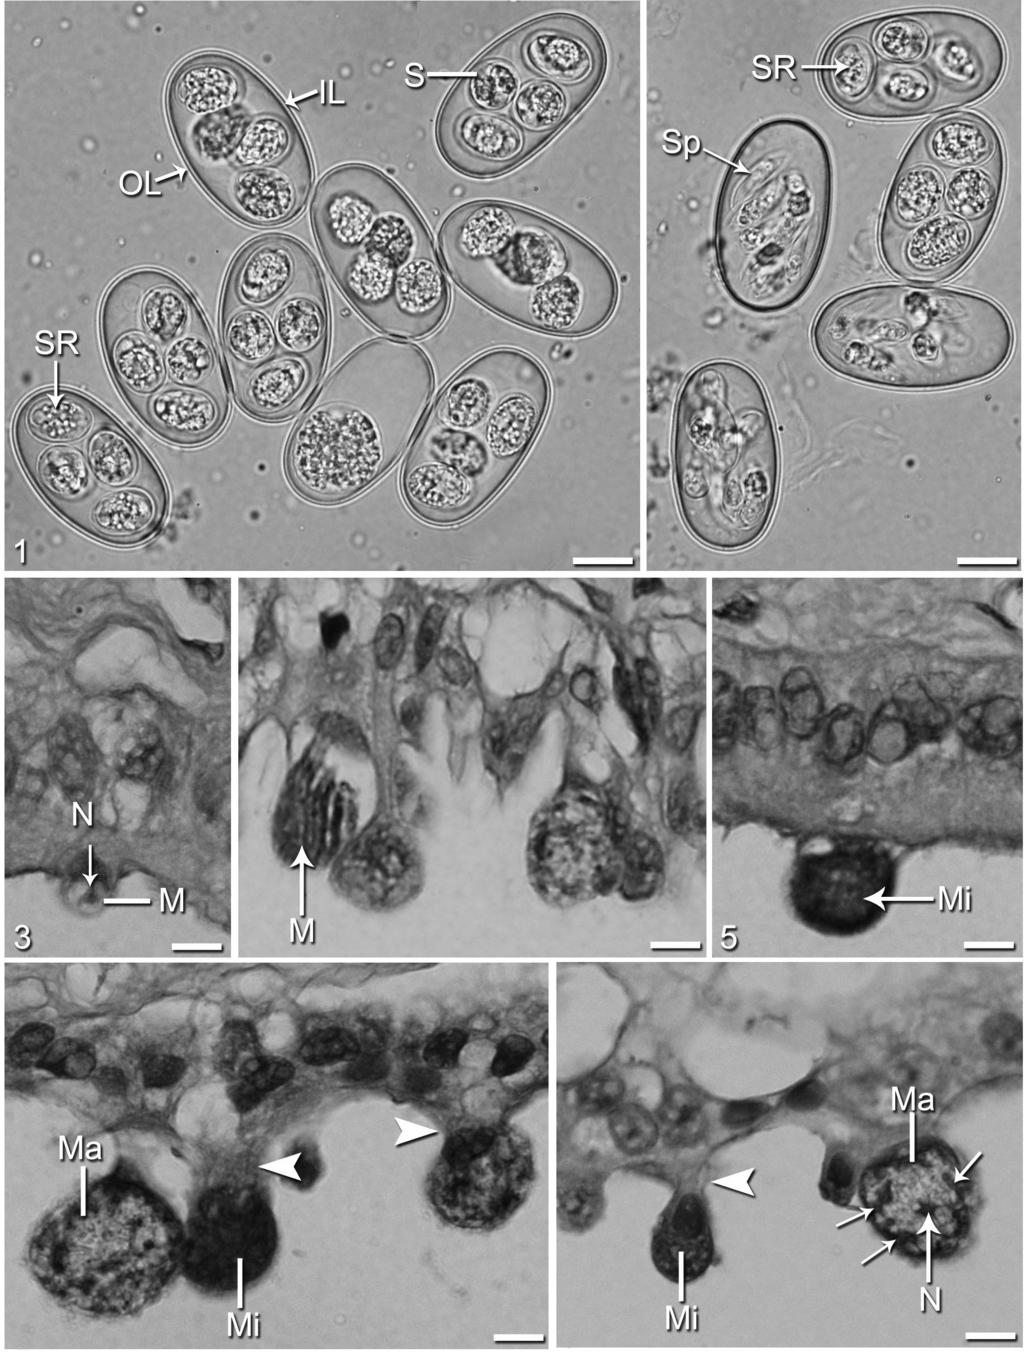 Abdel-Baki et al.: Choleoeimeria jazanensis sp. n. from Scincus hemprichii 1 2 3 4 5 6 7 Figs. 1 7. Coleoeimeria jazanensis sp. n. from the gall bladder of Sicncus hemprichii. Figs. 1, 2.